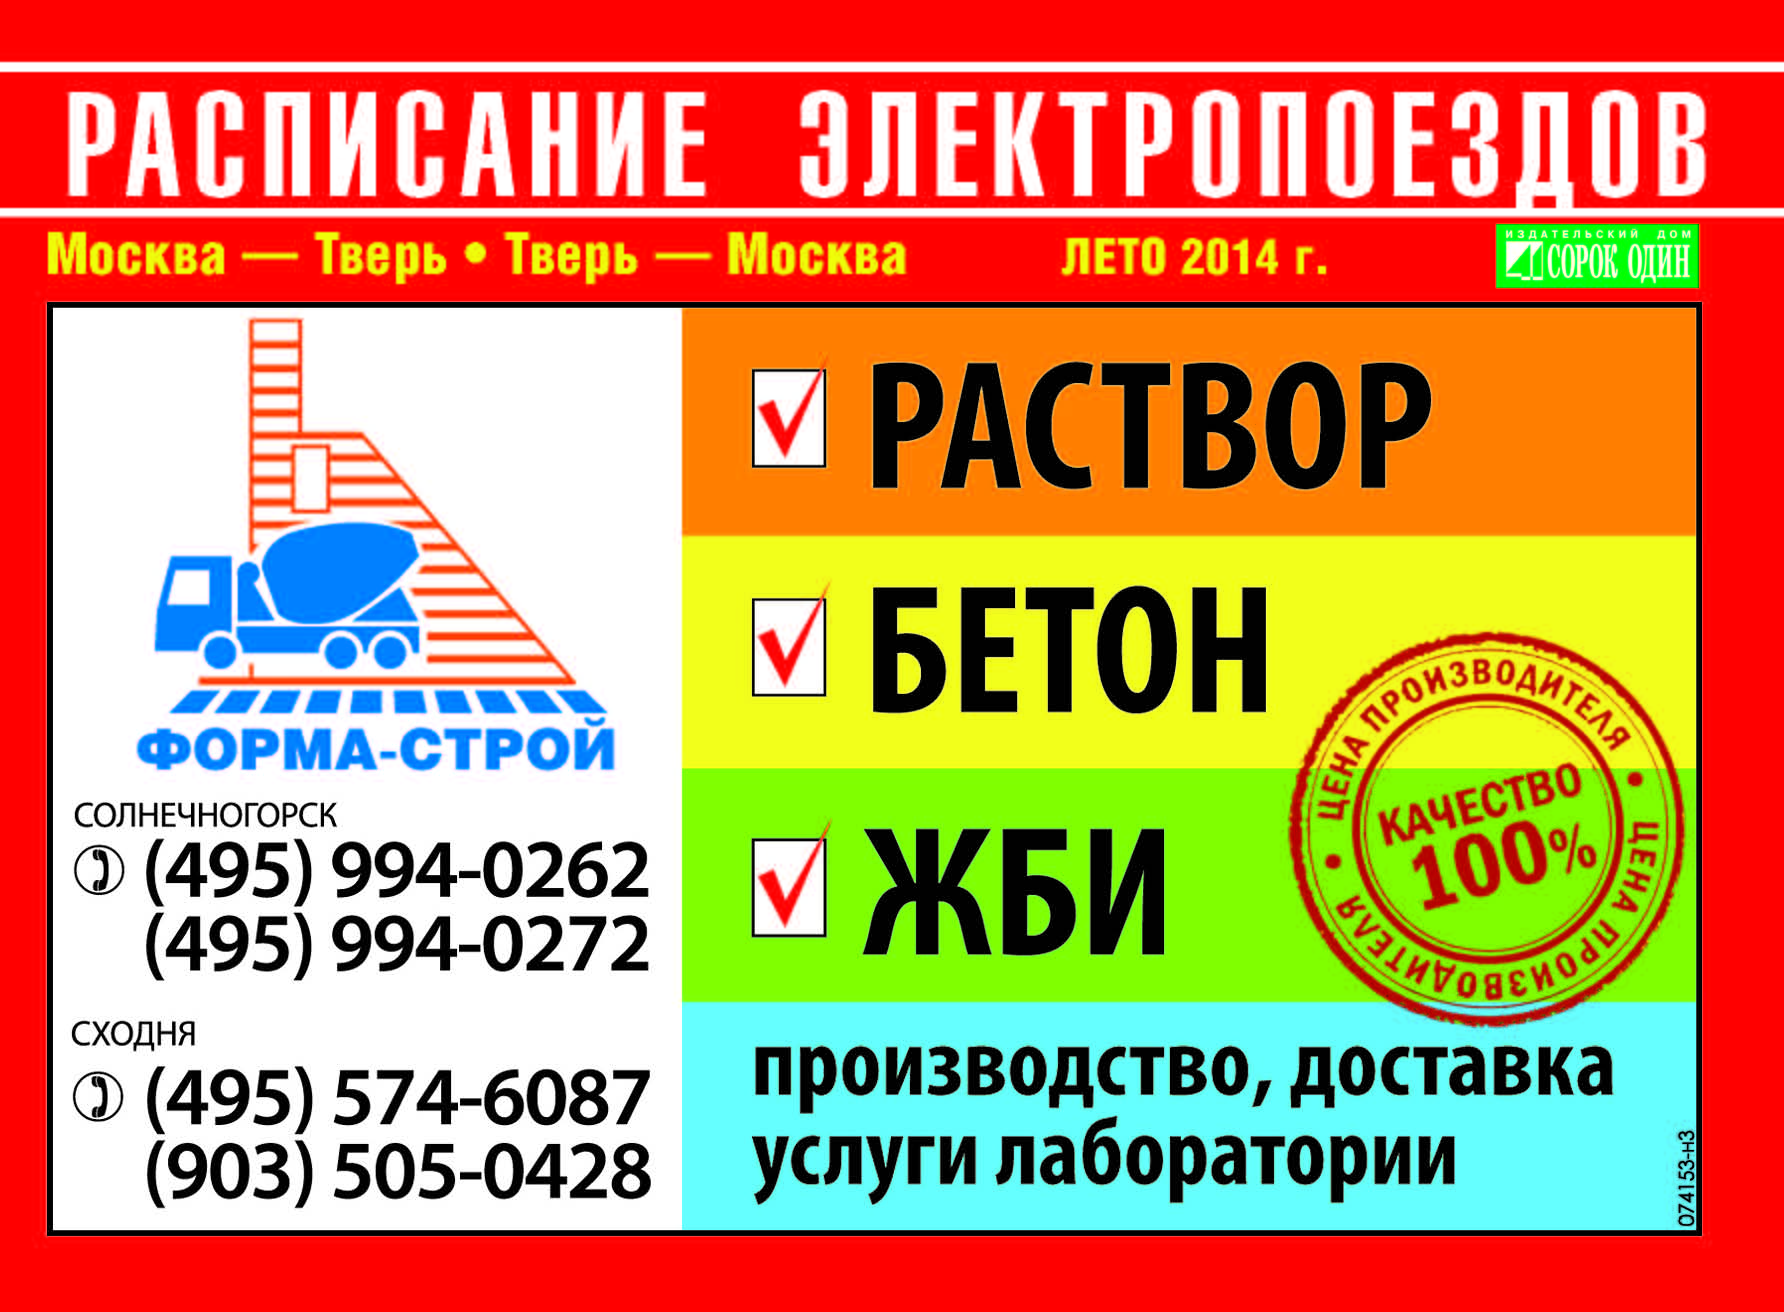 Расписание электропоездов Солнечногорск июнь 2014